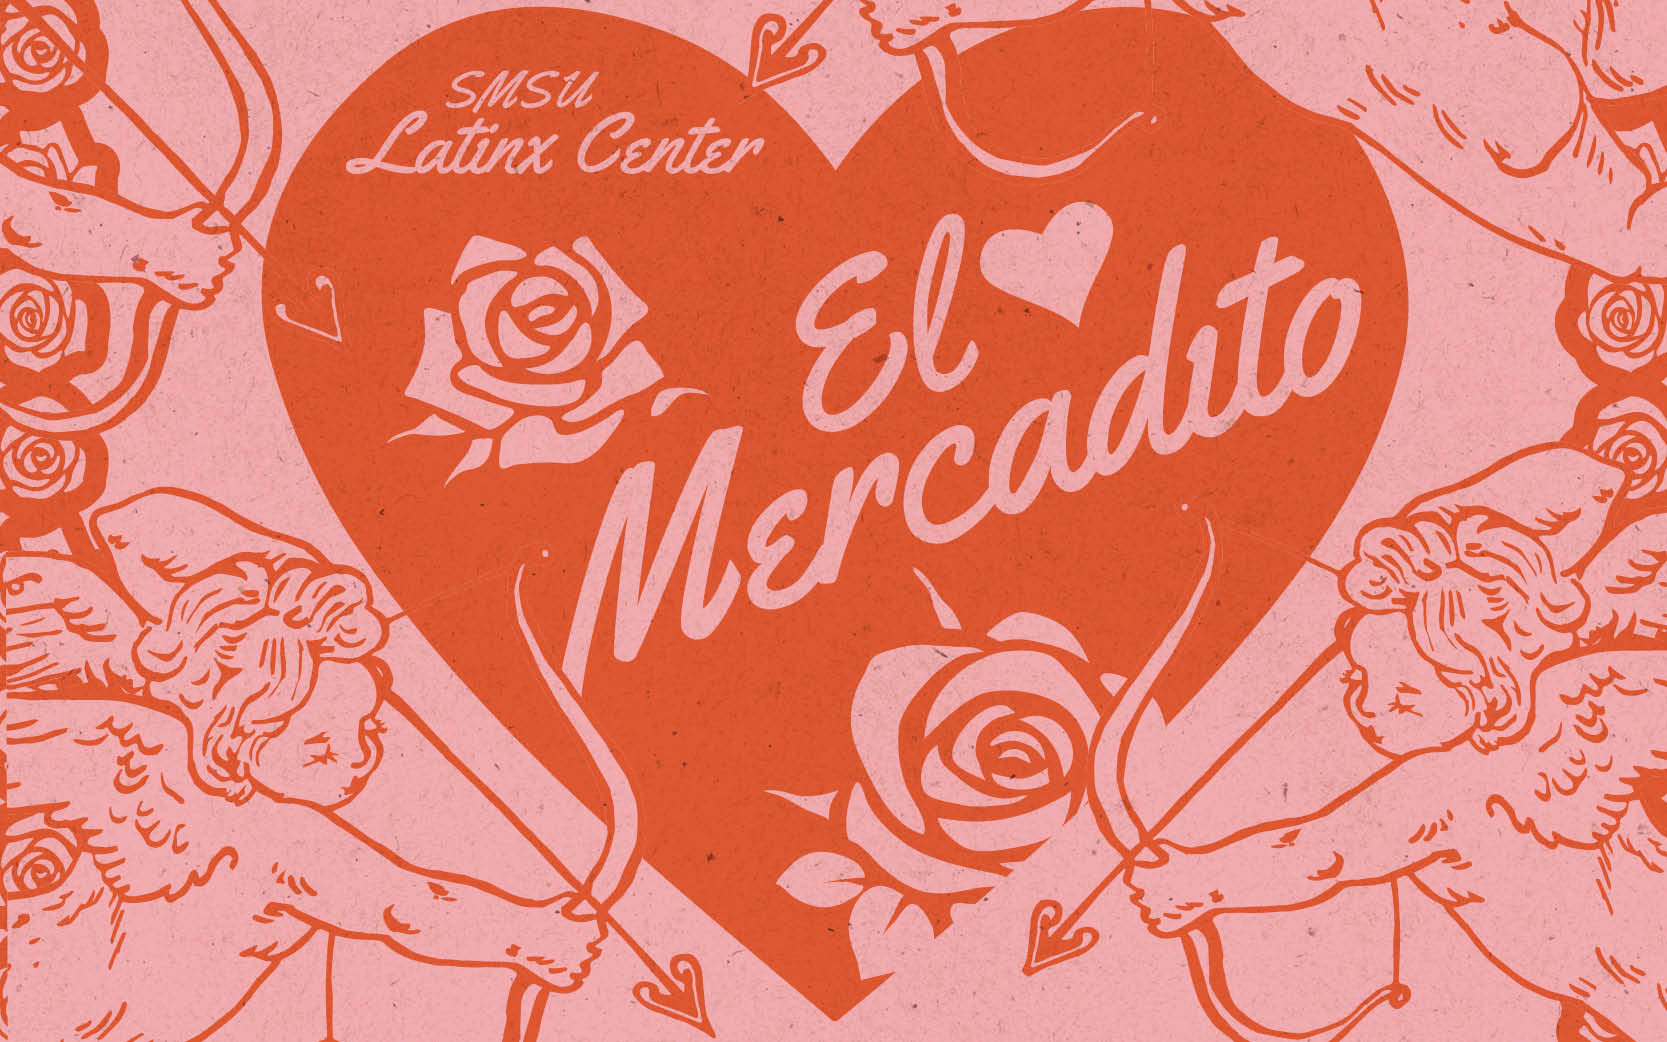 SMSU Latinx Center presents "El Mercadito"